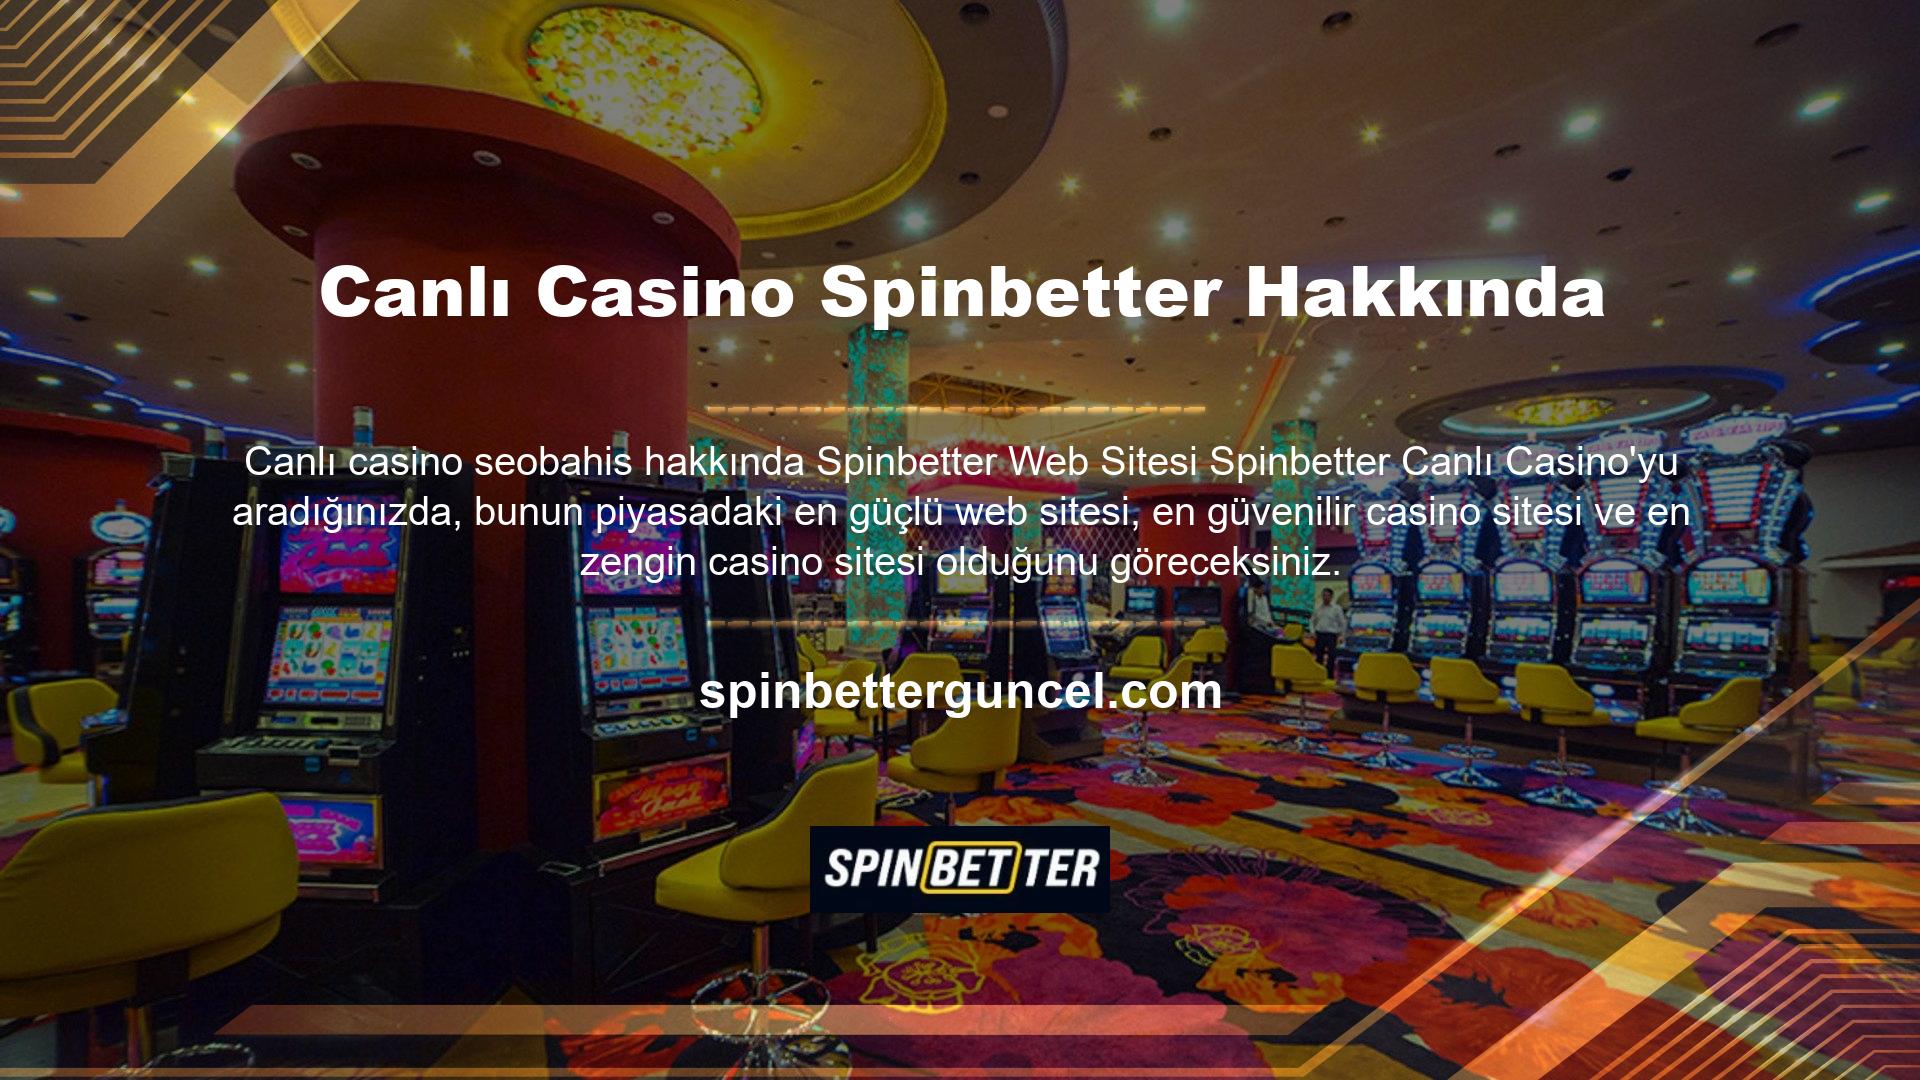 Spinbetter, ücretsiz casino oyunları ve benzeri alanlarda kullanılabilir, yasal işlevlerini yerine getirir, düzenlenir ve en önemlisi casino oyunları dünyasının en güvenilir oyun sağlayıcıları ve program şirketleri ile çalışır